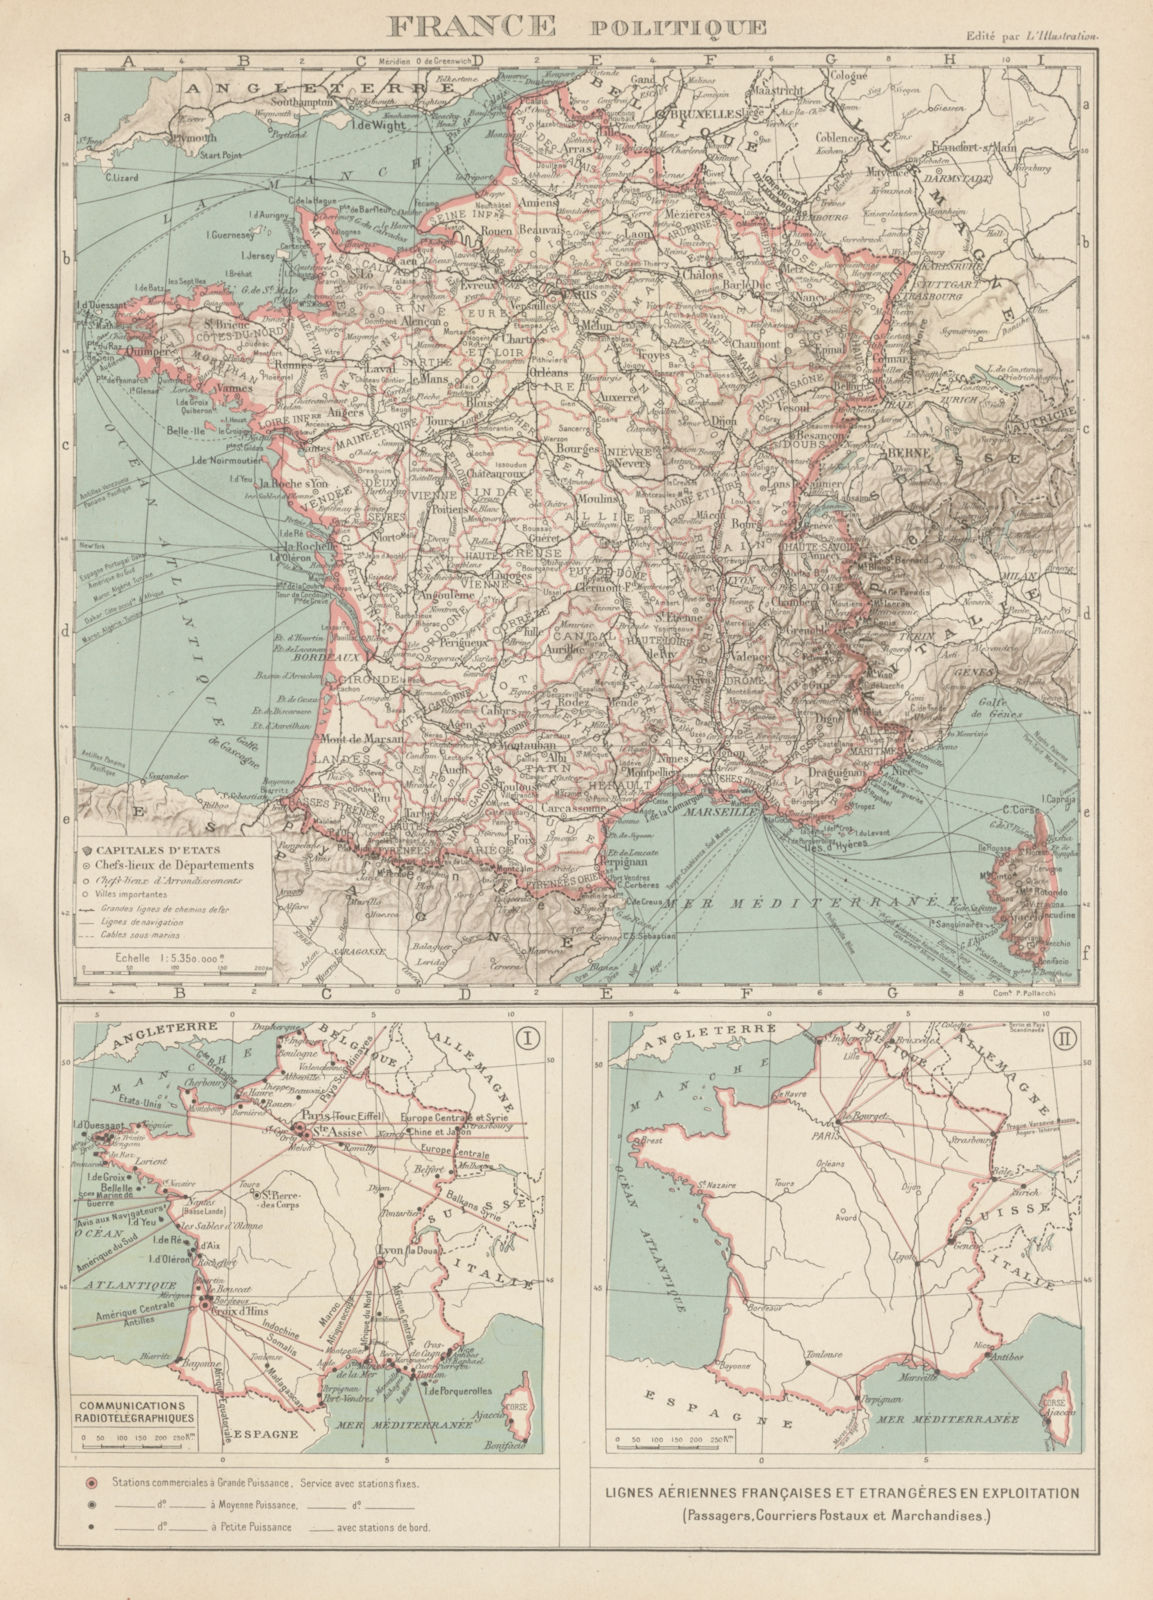 FRANCE Communications radiotélégraphiques. Lignes aériennes. Air routes 1929 map